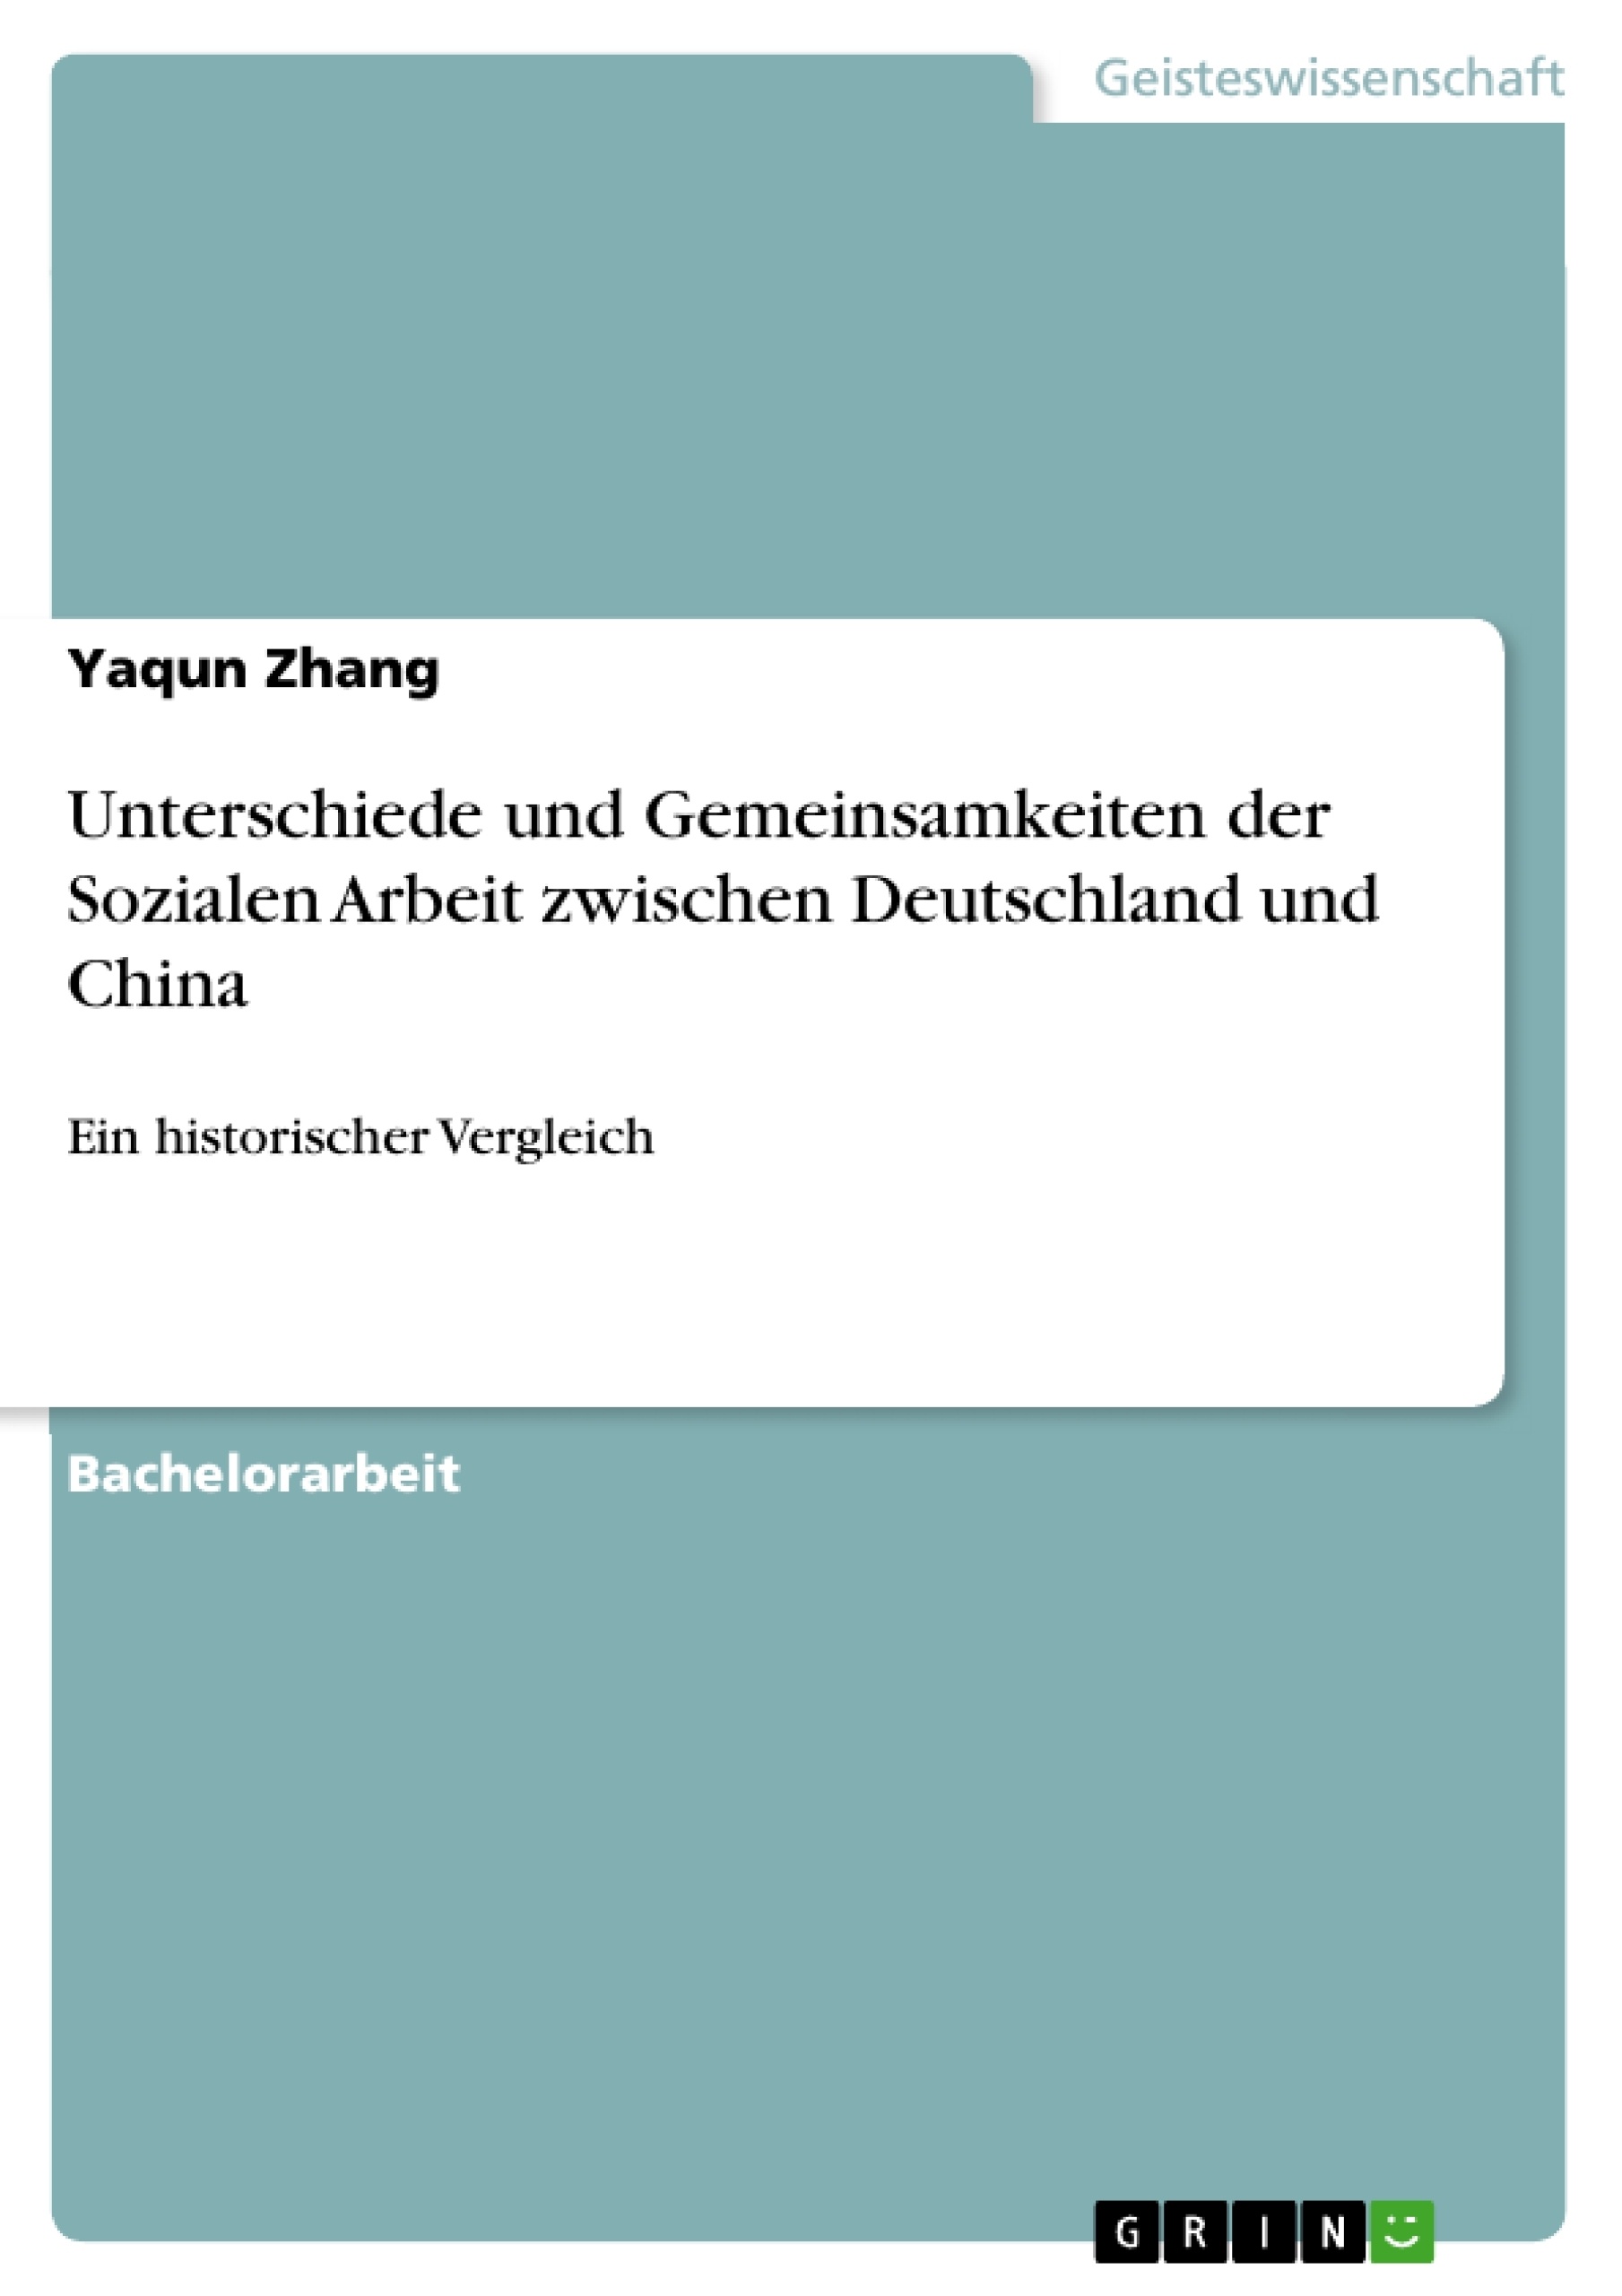 Title: Unterschiede und Gemeinsamkeiten der Sozialen Arbeit zwischen Deutschland und China